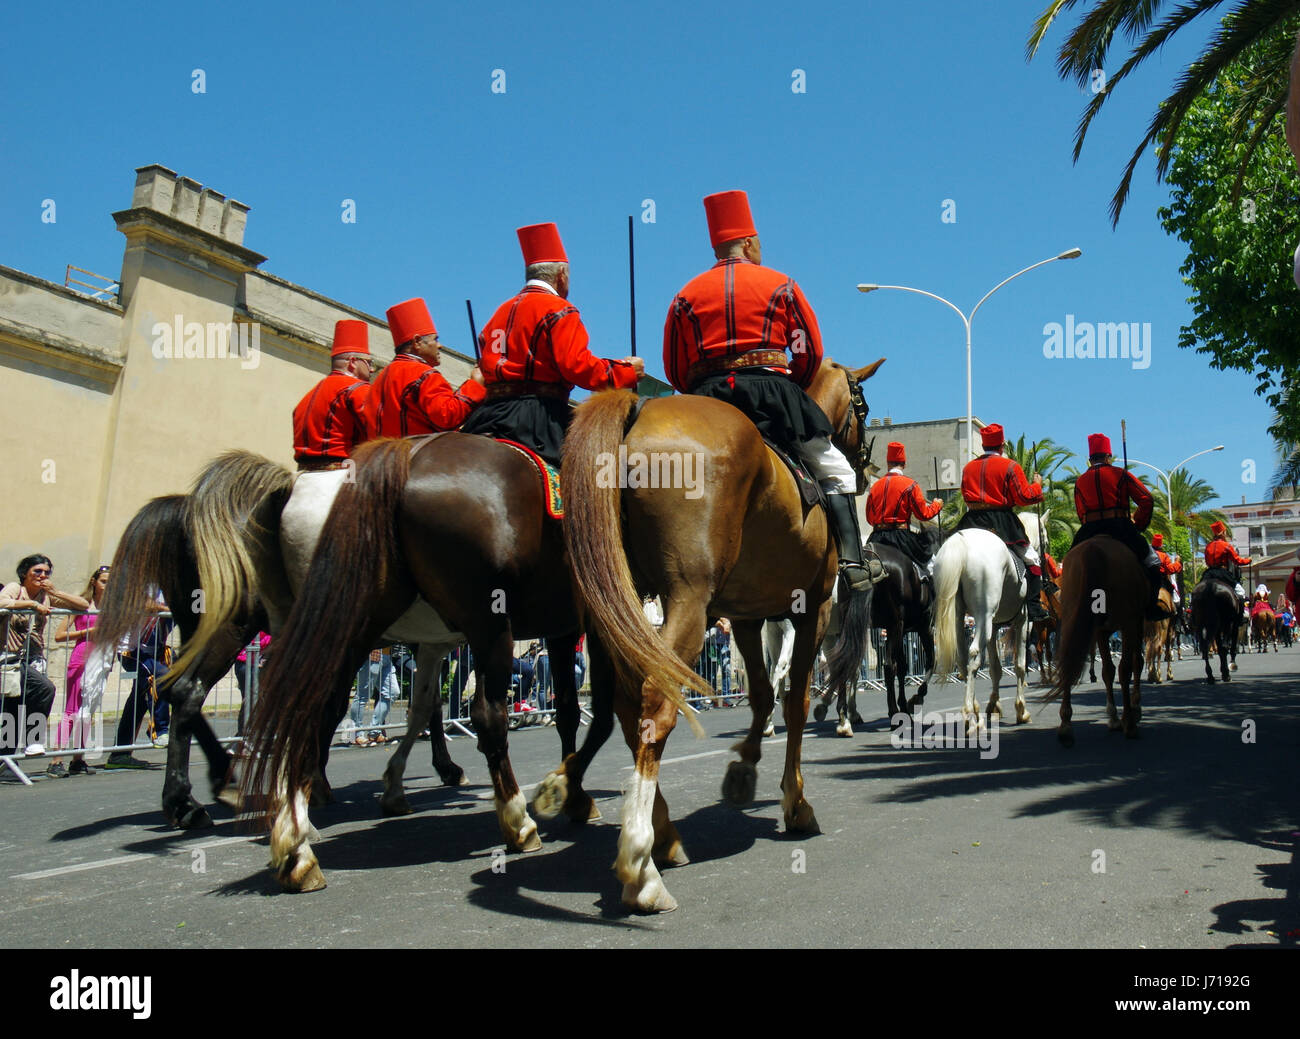 Sassari, Sardaigne. Cavalcata Sarda 2017, traditionnel défilé de costumes et les cavaliers de toute la Sardaigne Banque D'Images